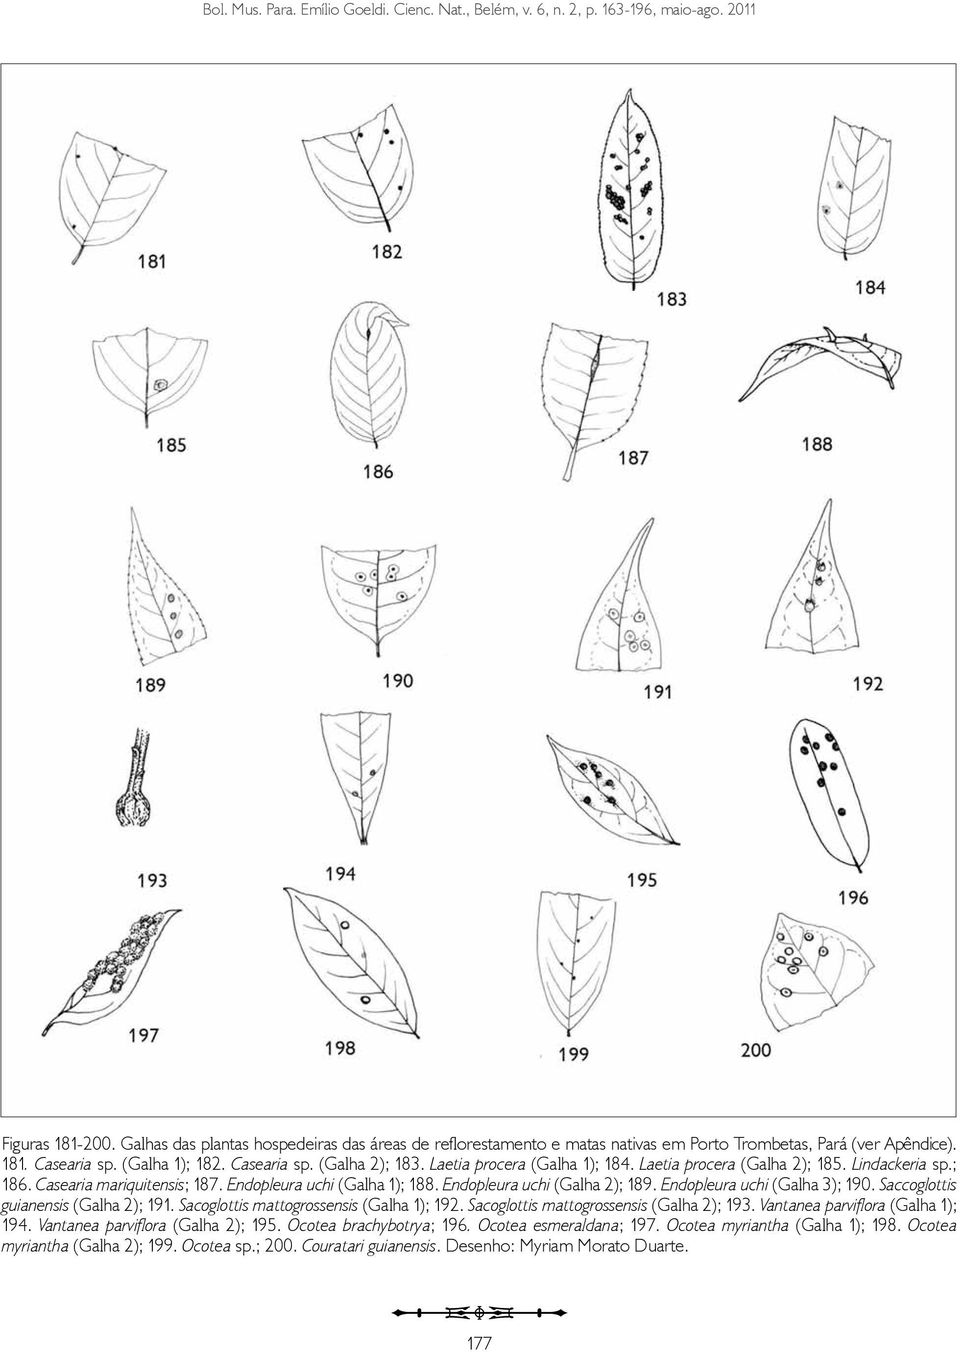 Laetia procera (Galha 1); 184. Laetia procera (Galha 2); 185. Lindackeria sp.; 186. Casearia mariquitensis; 187. Endopleura uchi (Galha 1); 188. Endopleura uchi (Galha 2); 189.